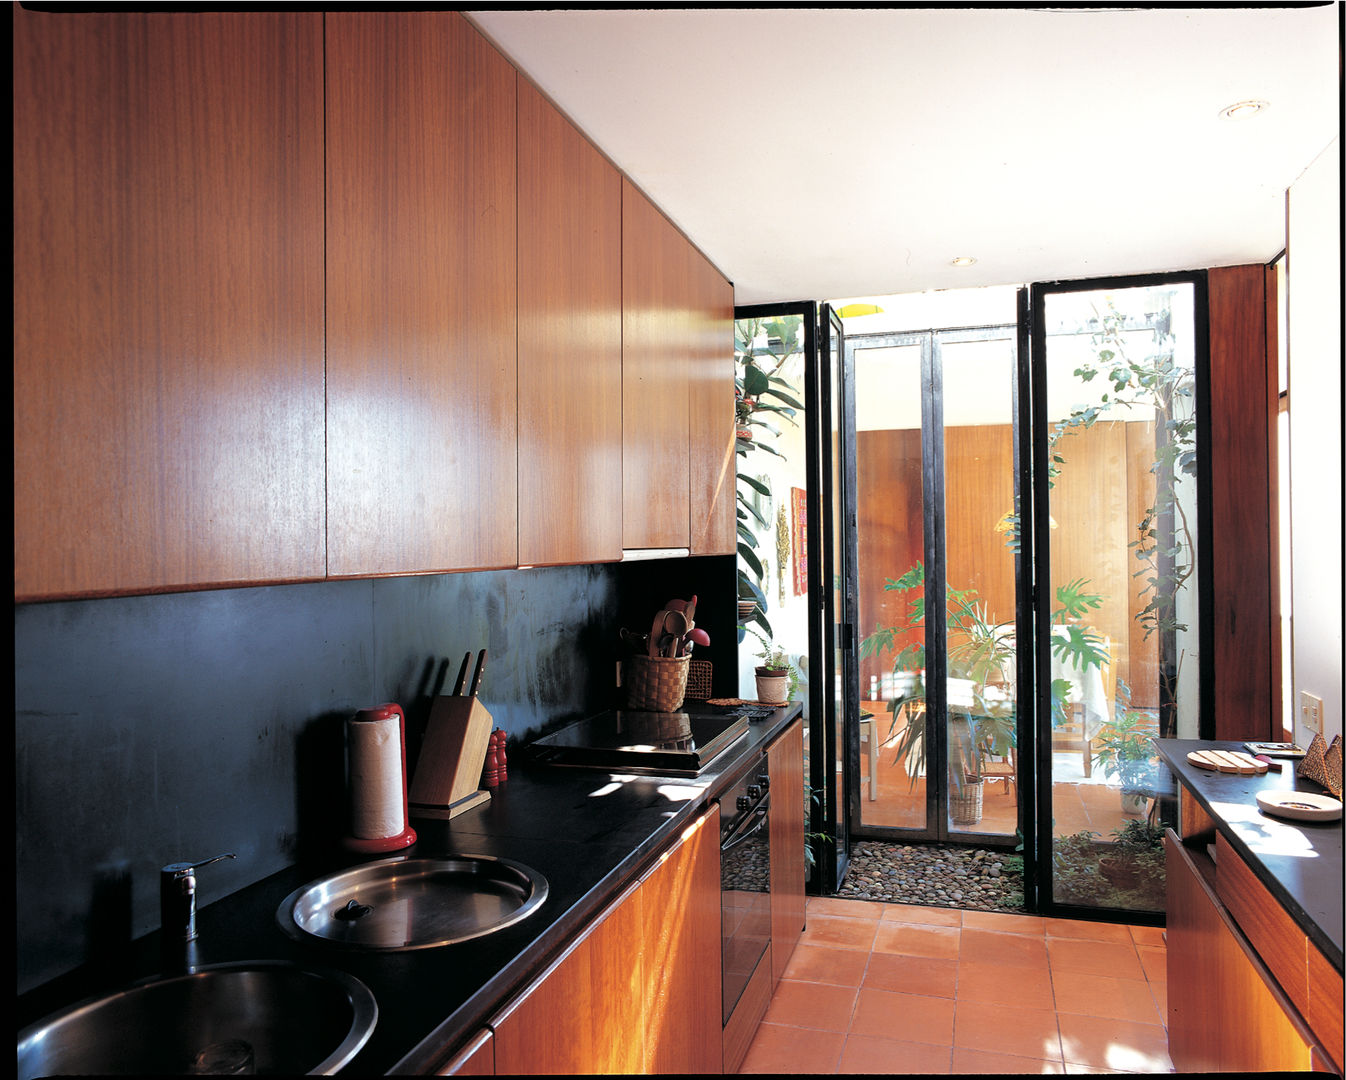 Casa Eng. Raimundo Delgado, C. PRATA ARQUITETOS C. PRATA ARQUITETOS Modern style kitchen